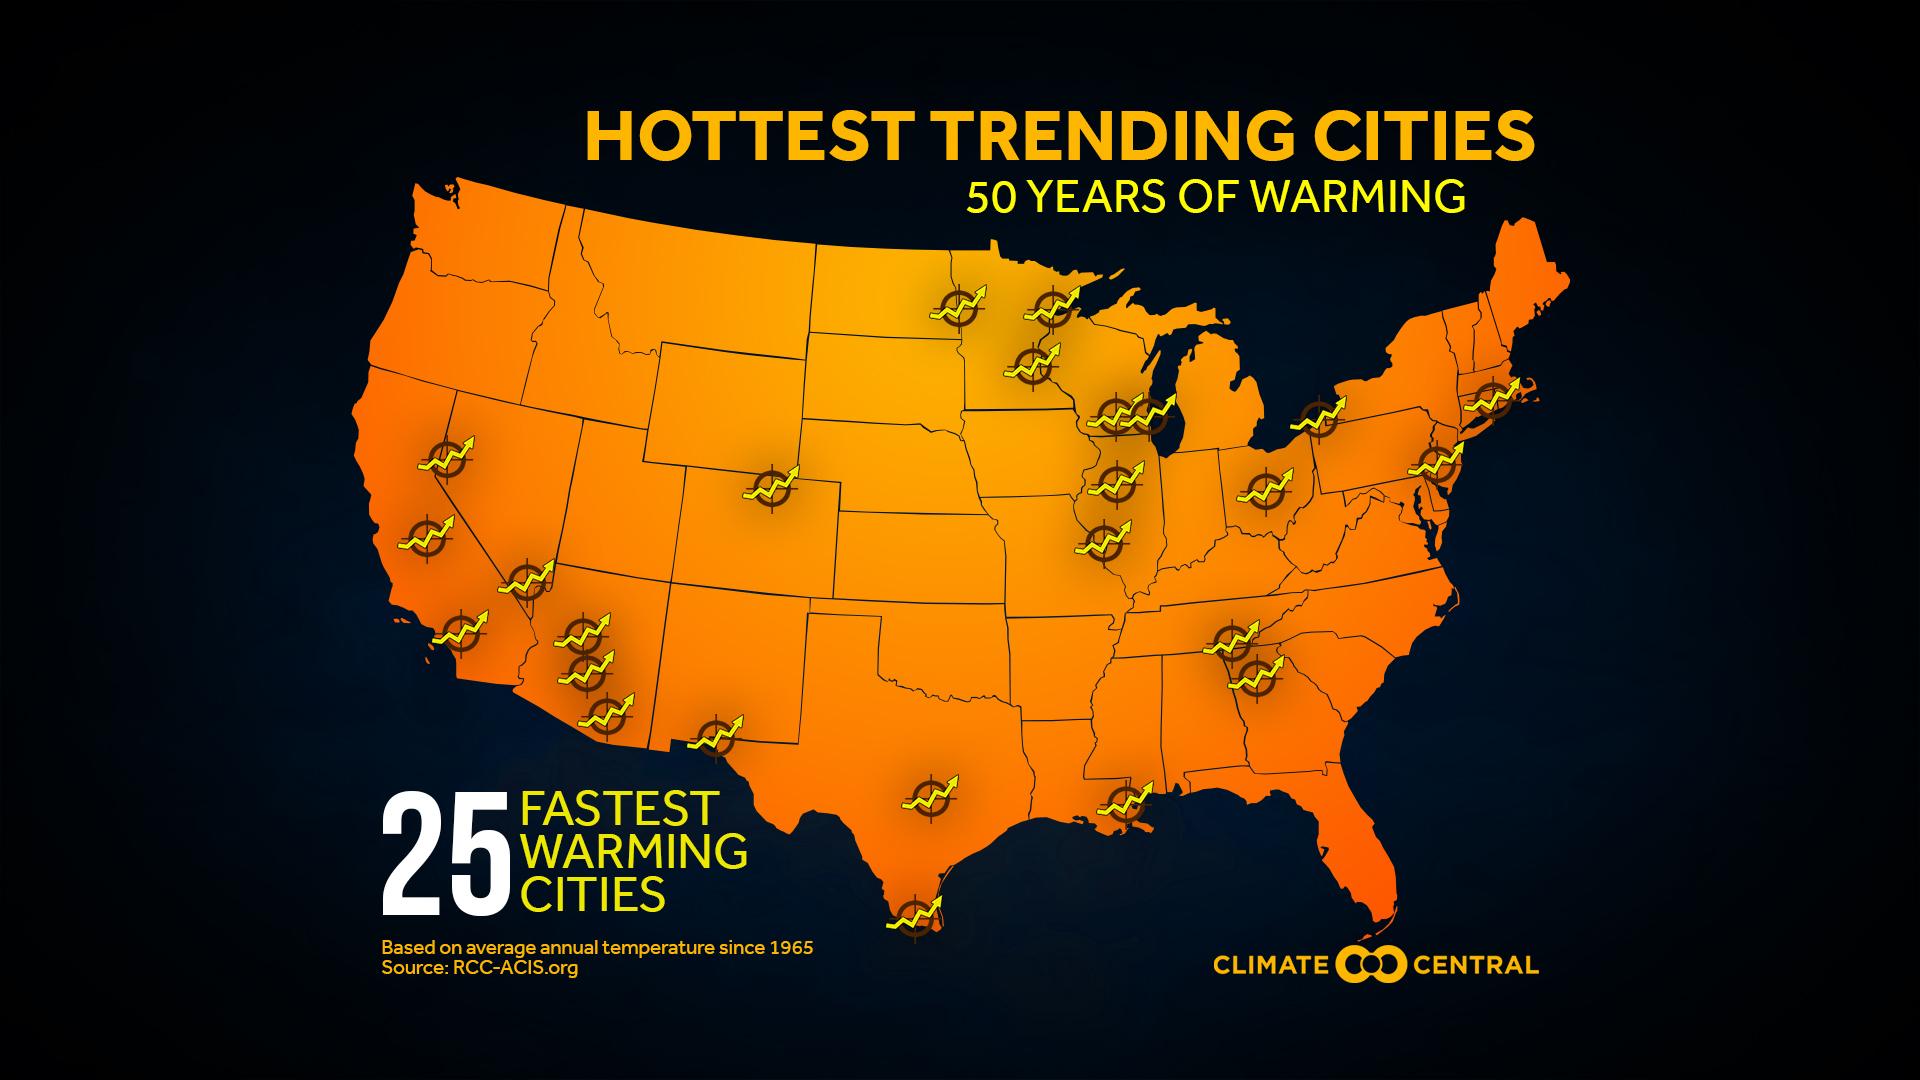 Set 1 - Hottest Trending Cities